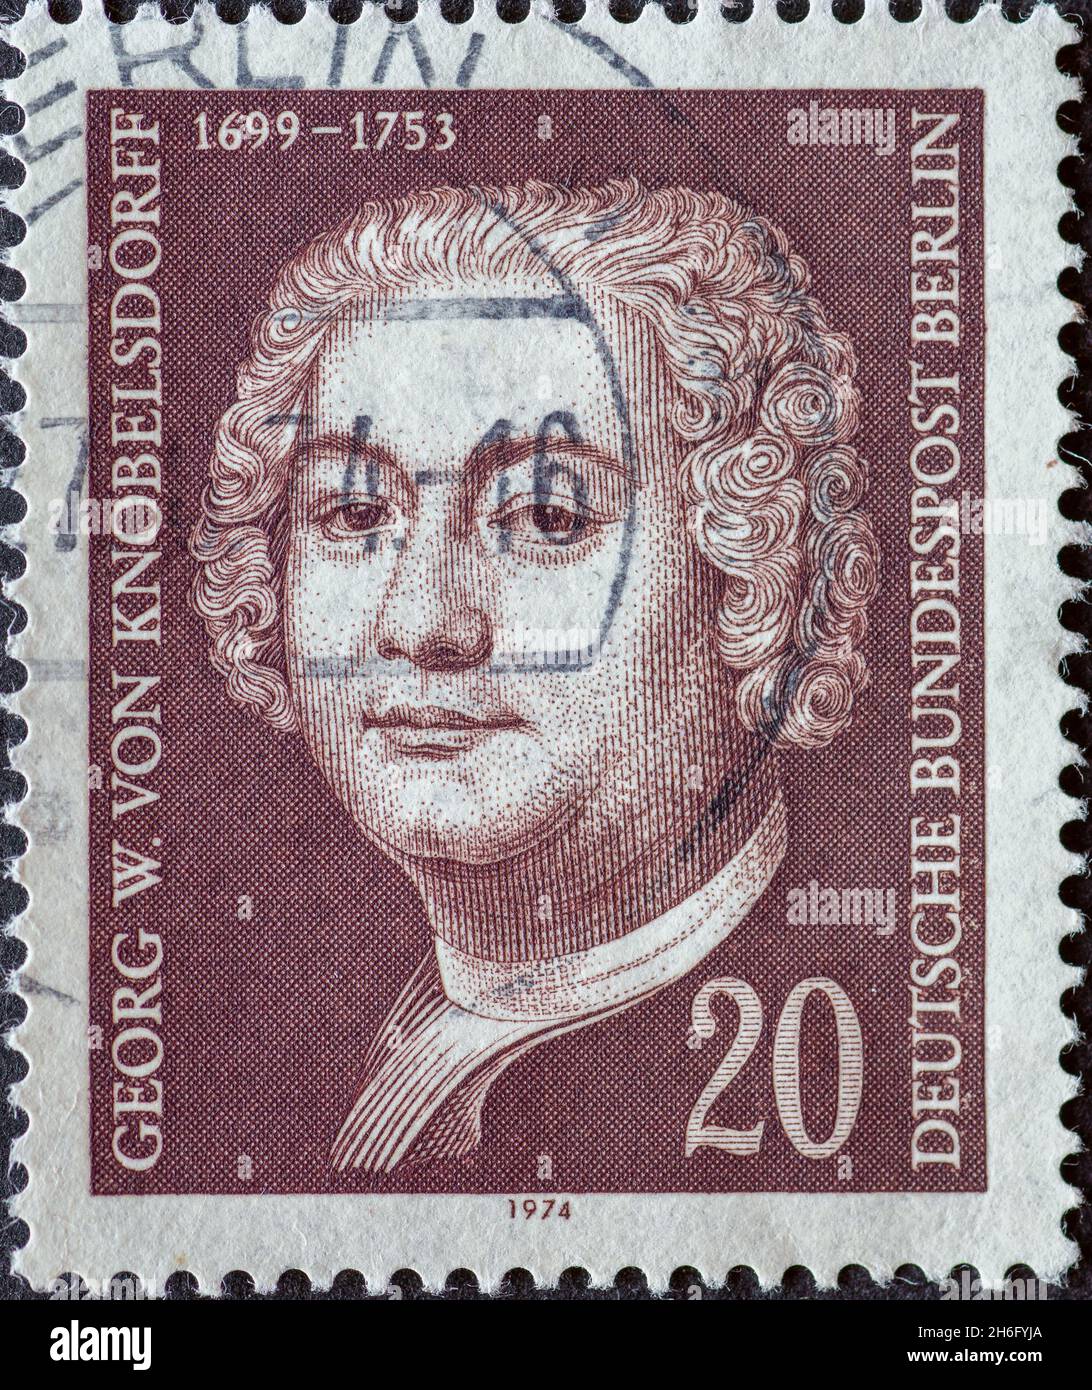 ALLEMAGNE, Berlin - VERS 1974 : timbre-poste d'Allemagne, Berlin montrant un portrait du peintre portrait et paysage, du directeur de théâtre et de l'arche Banque D'Images